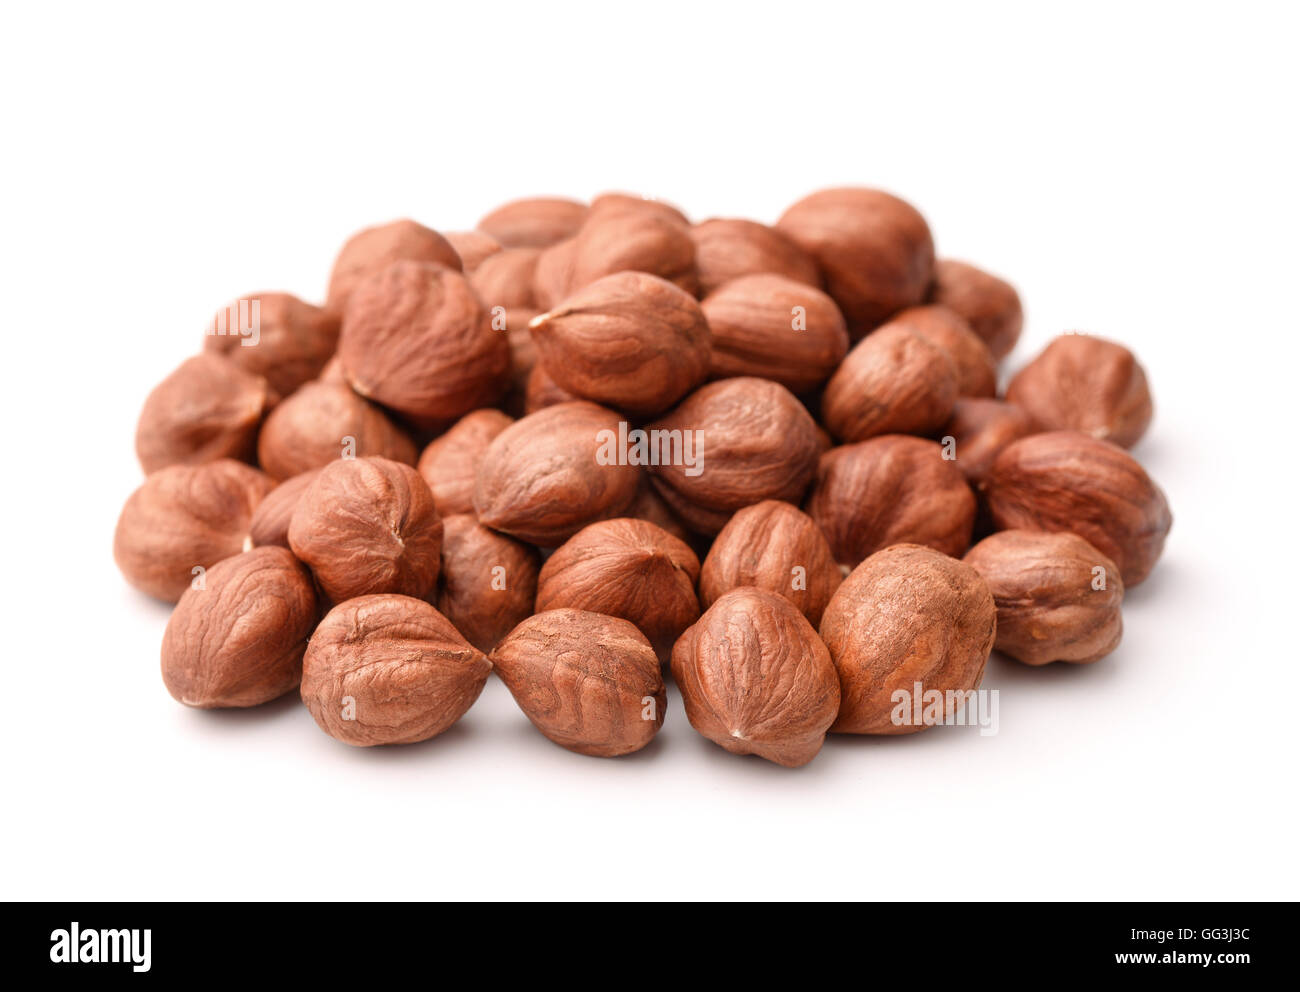 Pile of peeled hazelnuts isolated on white Stock Photo